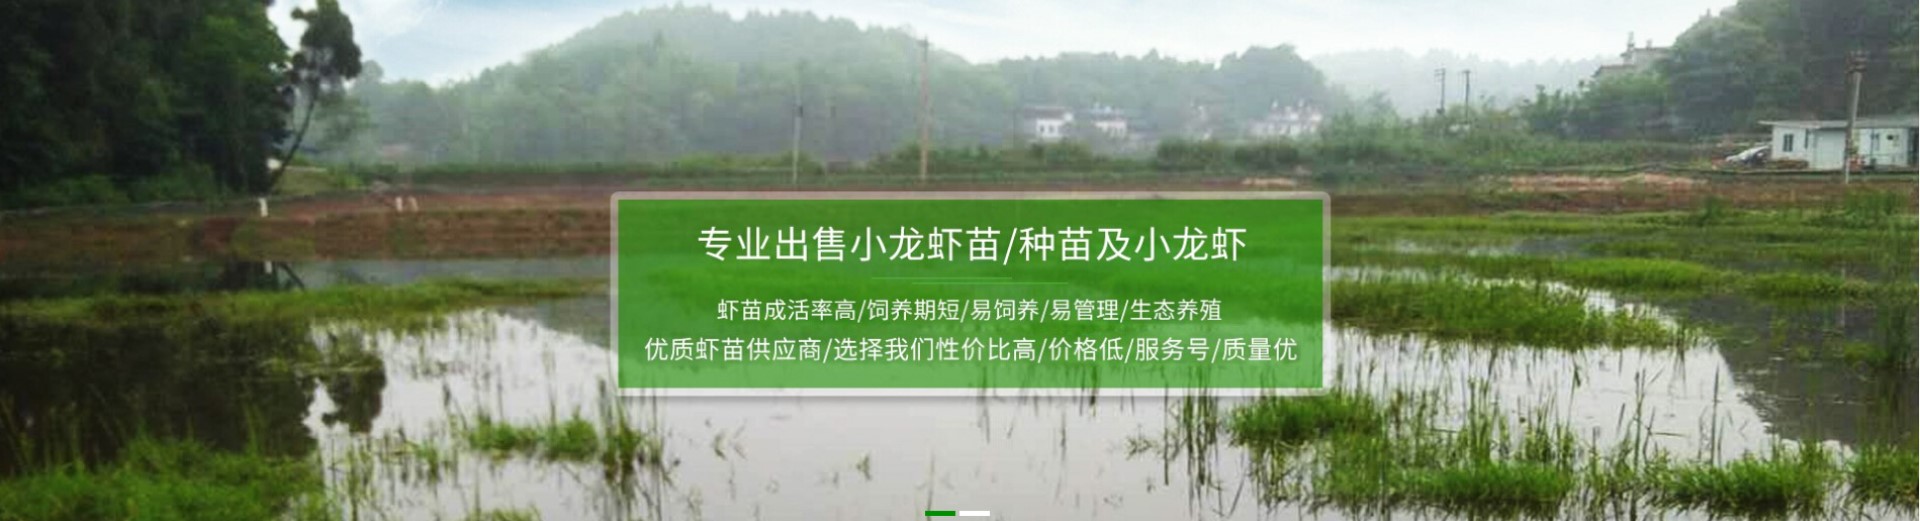 水产养殖企业响应式网站模板案例